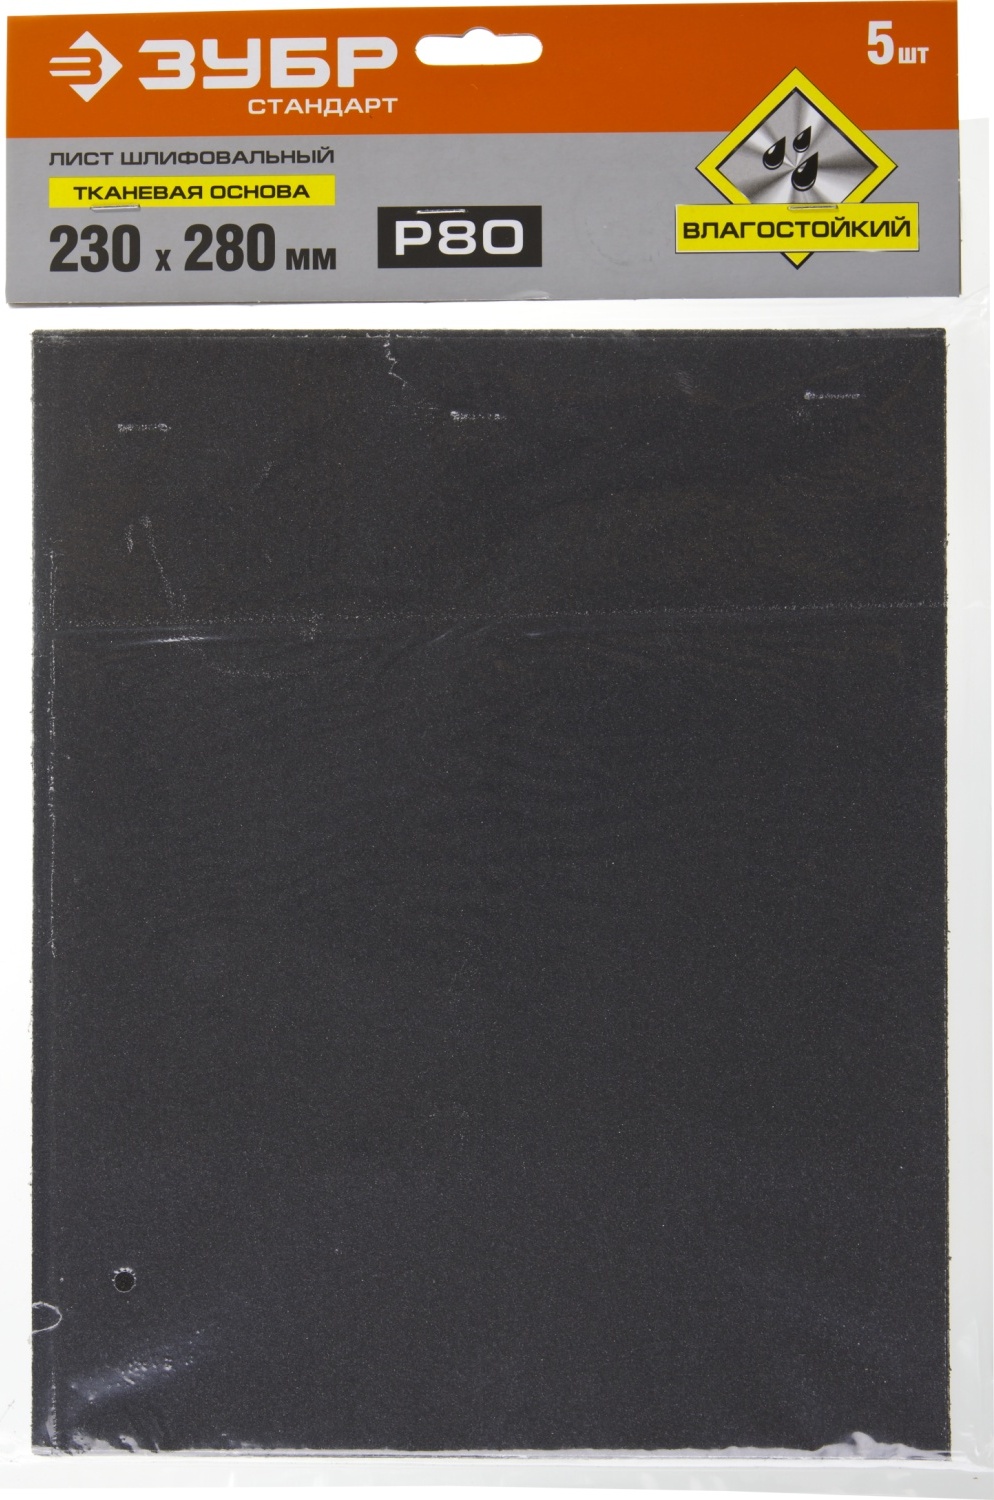 Лист шлифовальный водостойкий 230х280 мм Р-80 ЗУБР Стандарт 35415-080, тканевая основа, 5 шт - фото